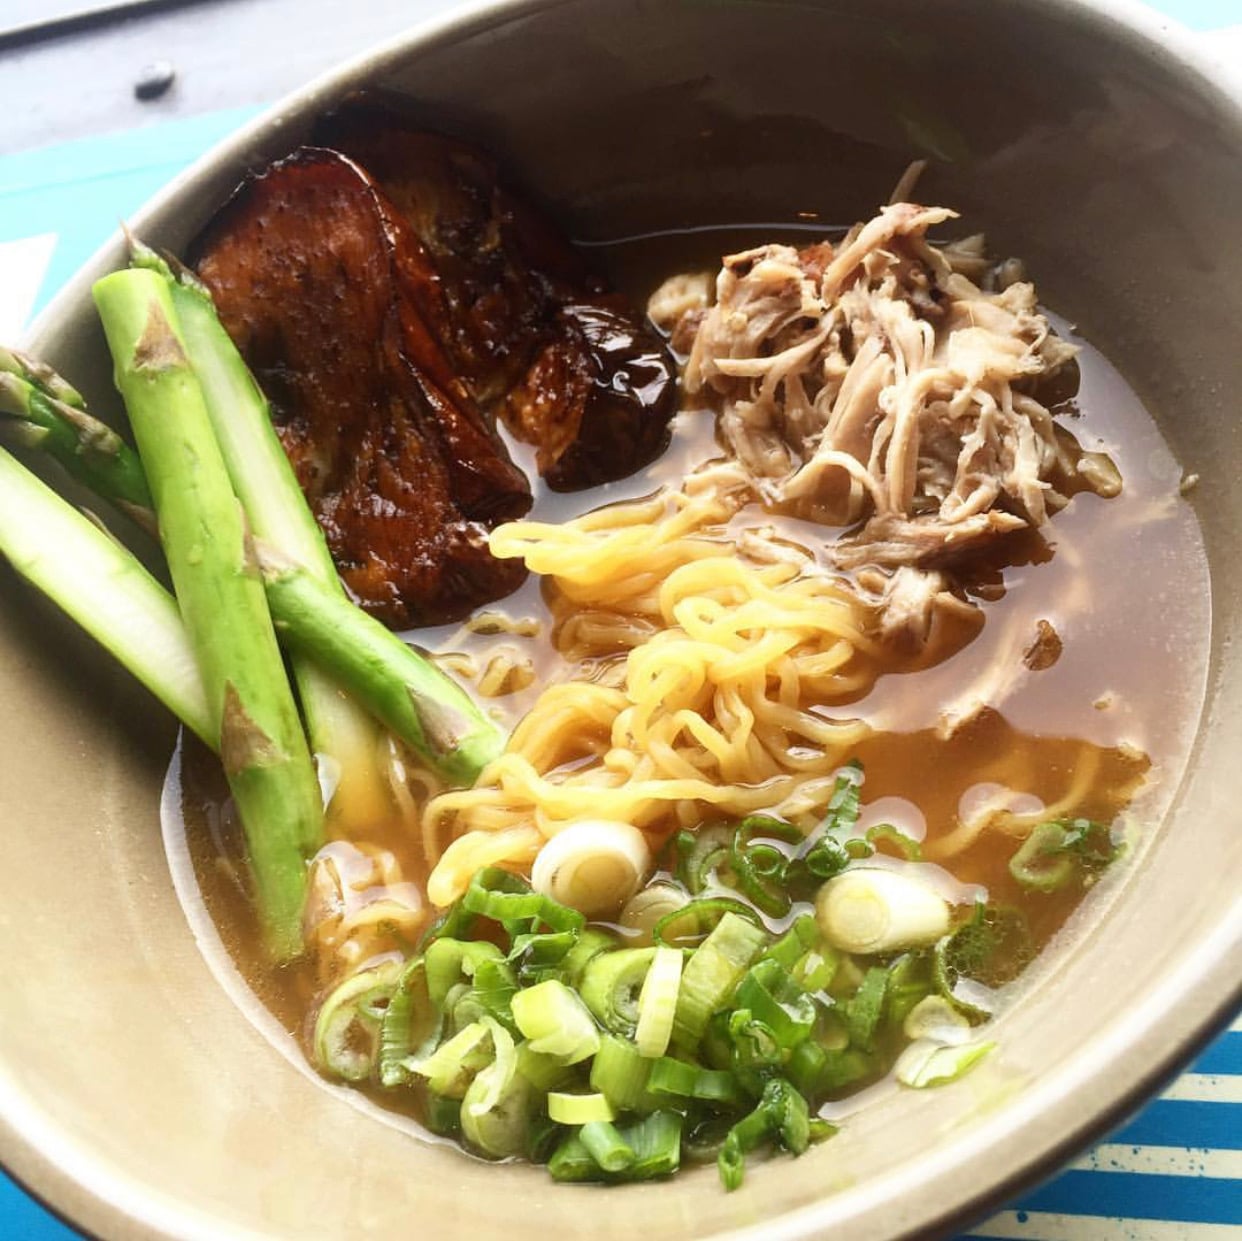 Toki-Underground-H-Street-Restaurants-Ramen-Noodles-Soup